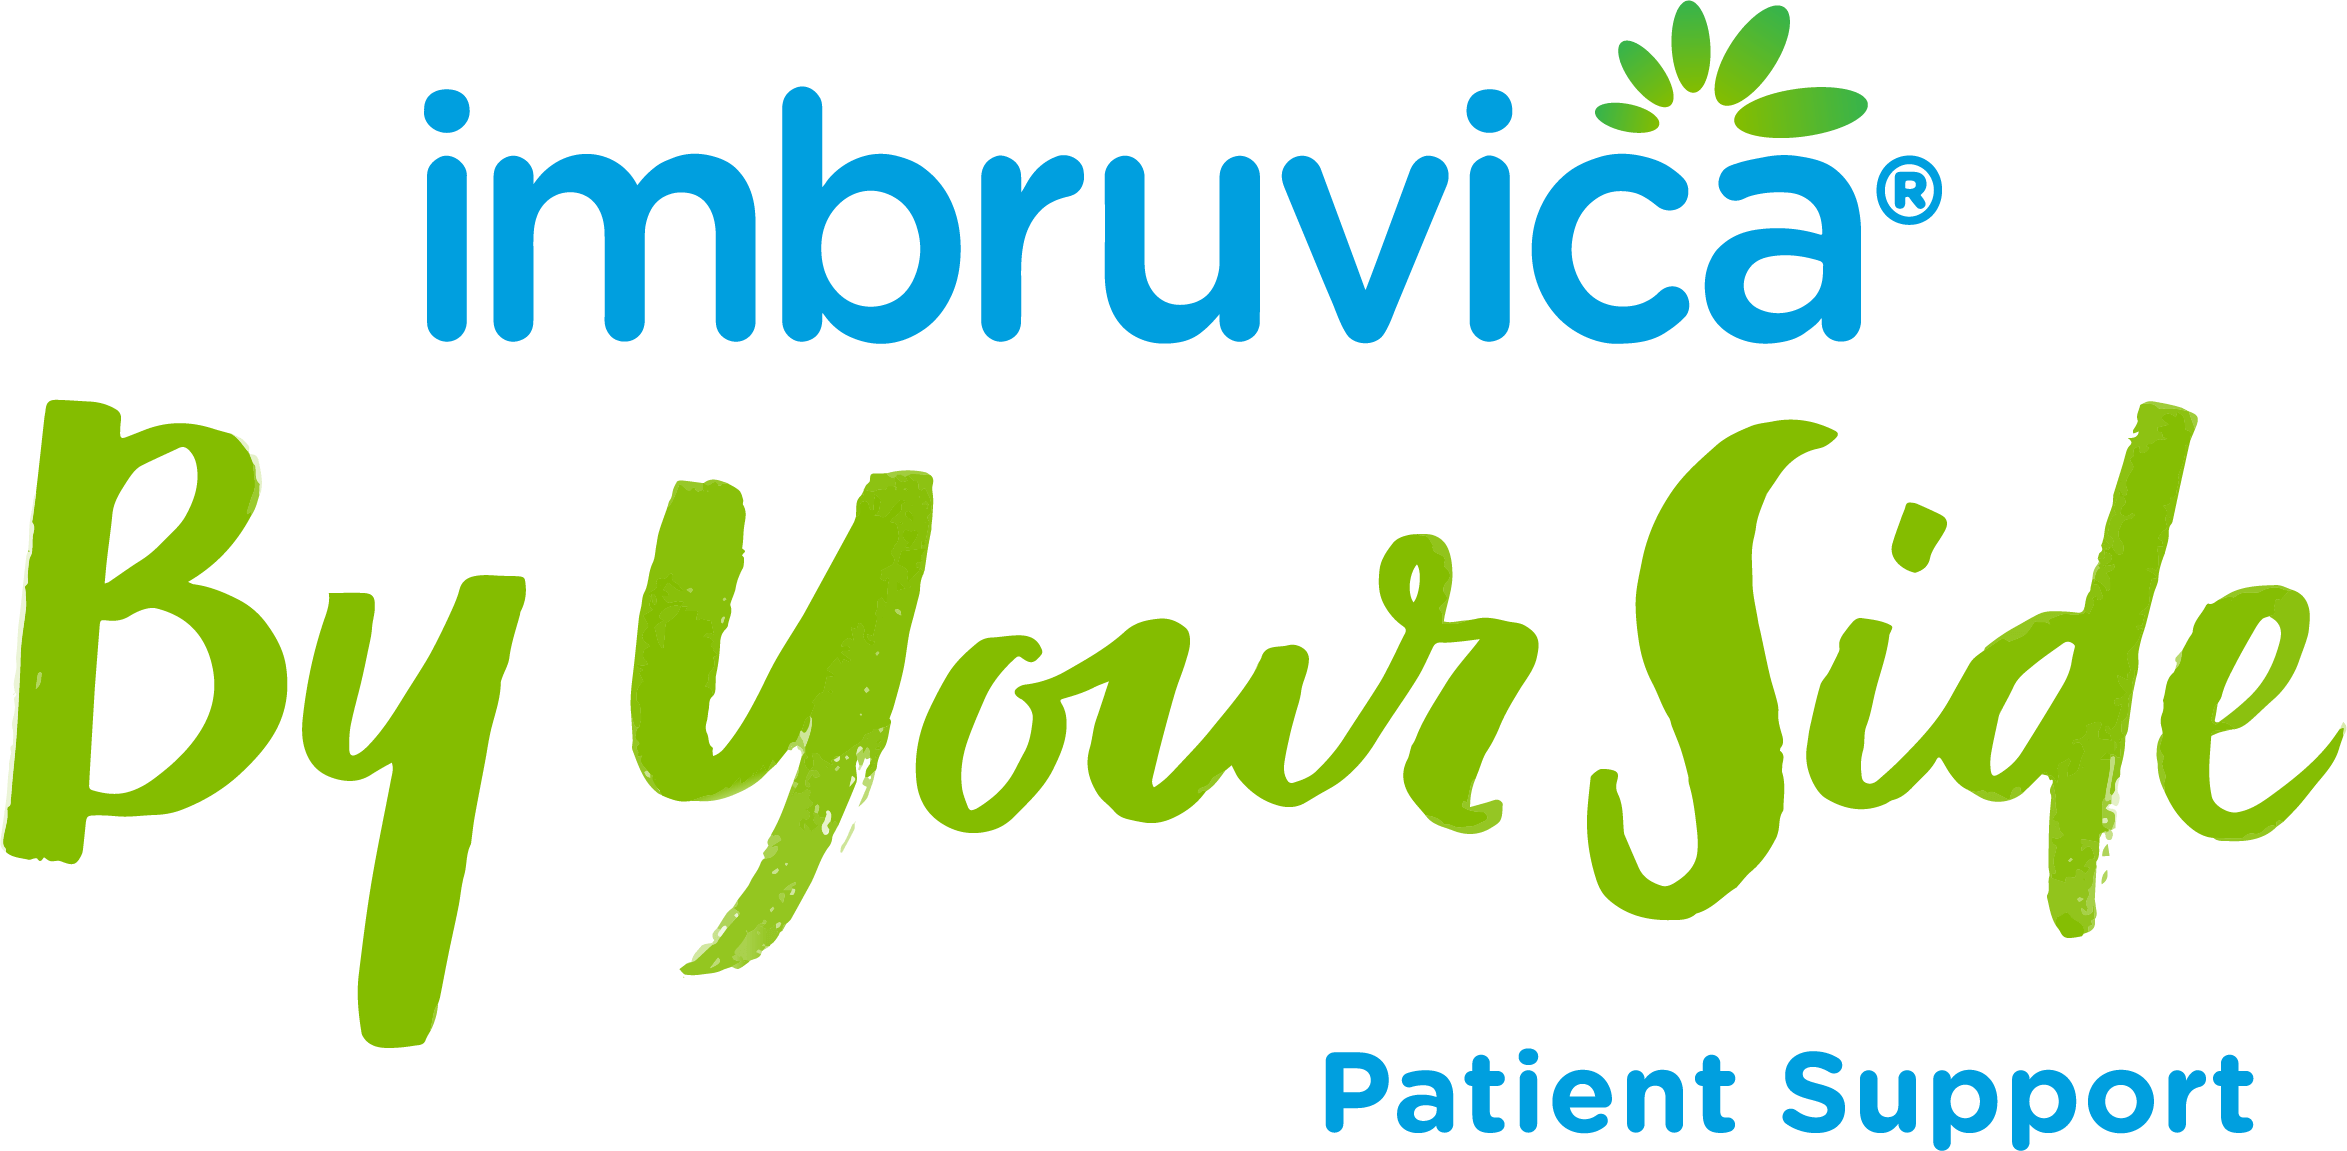 Programa de apoyo al paciente IMBRUVICA® By Your Side